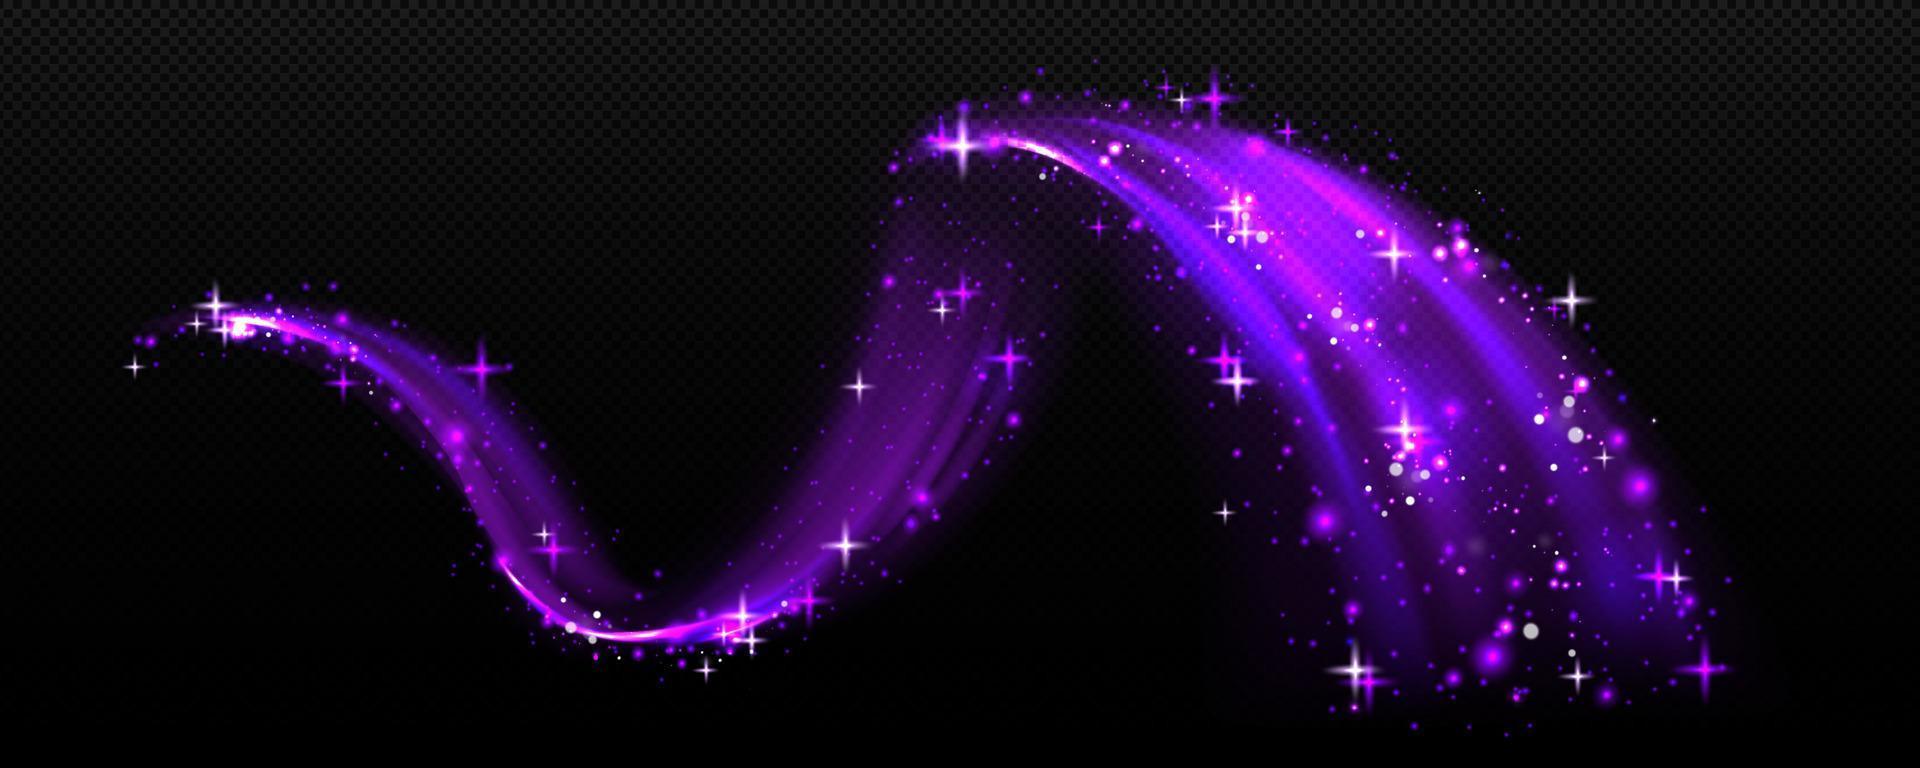 efecto mágico, remolino de aire púrpura con estrellas blancas vector